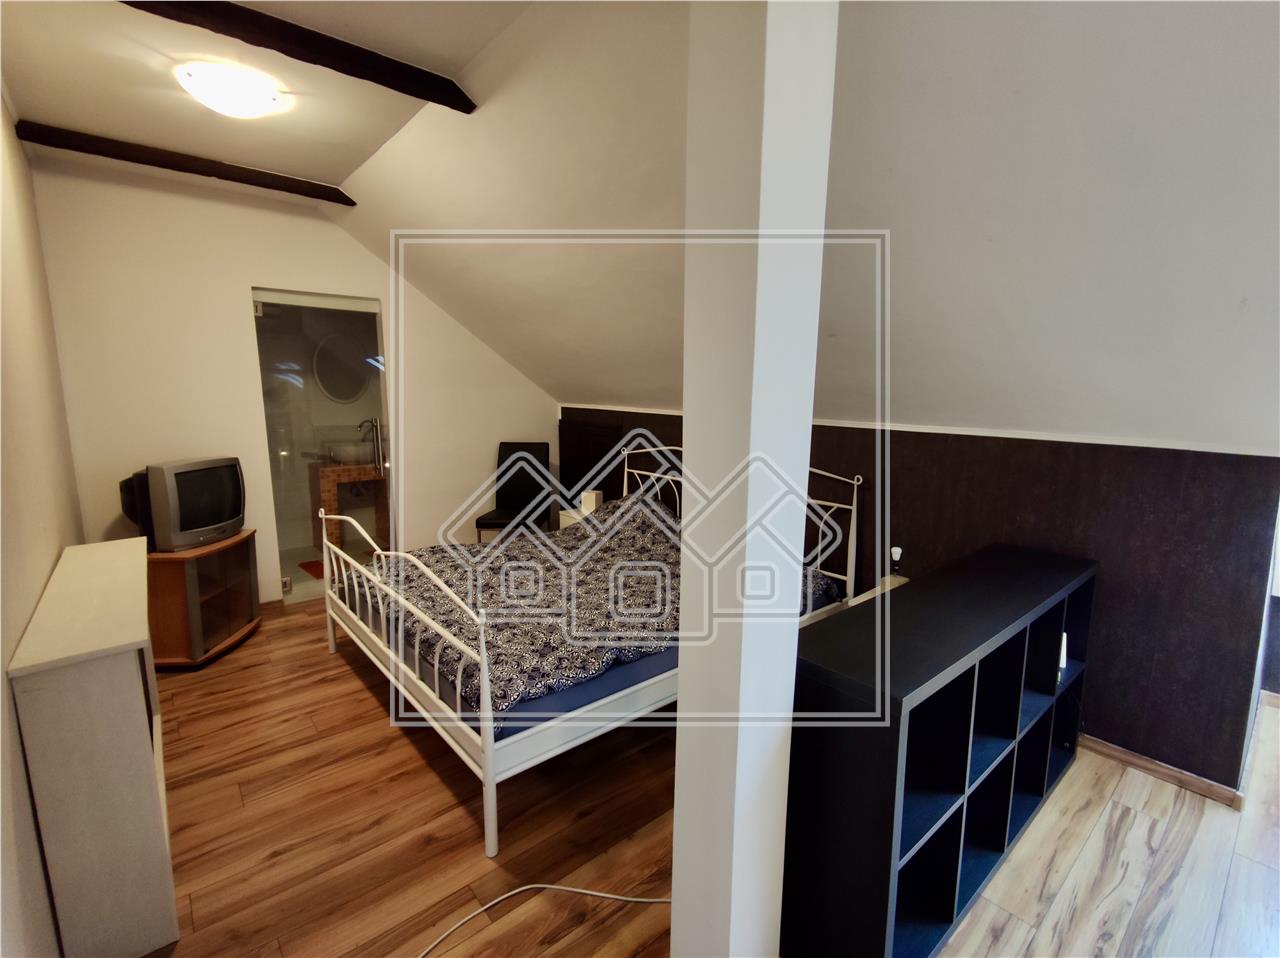 Wohnung zu verkaufen in Sibiu - modern m?bliert -